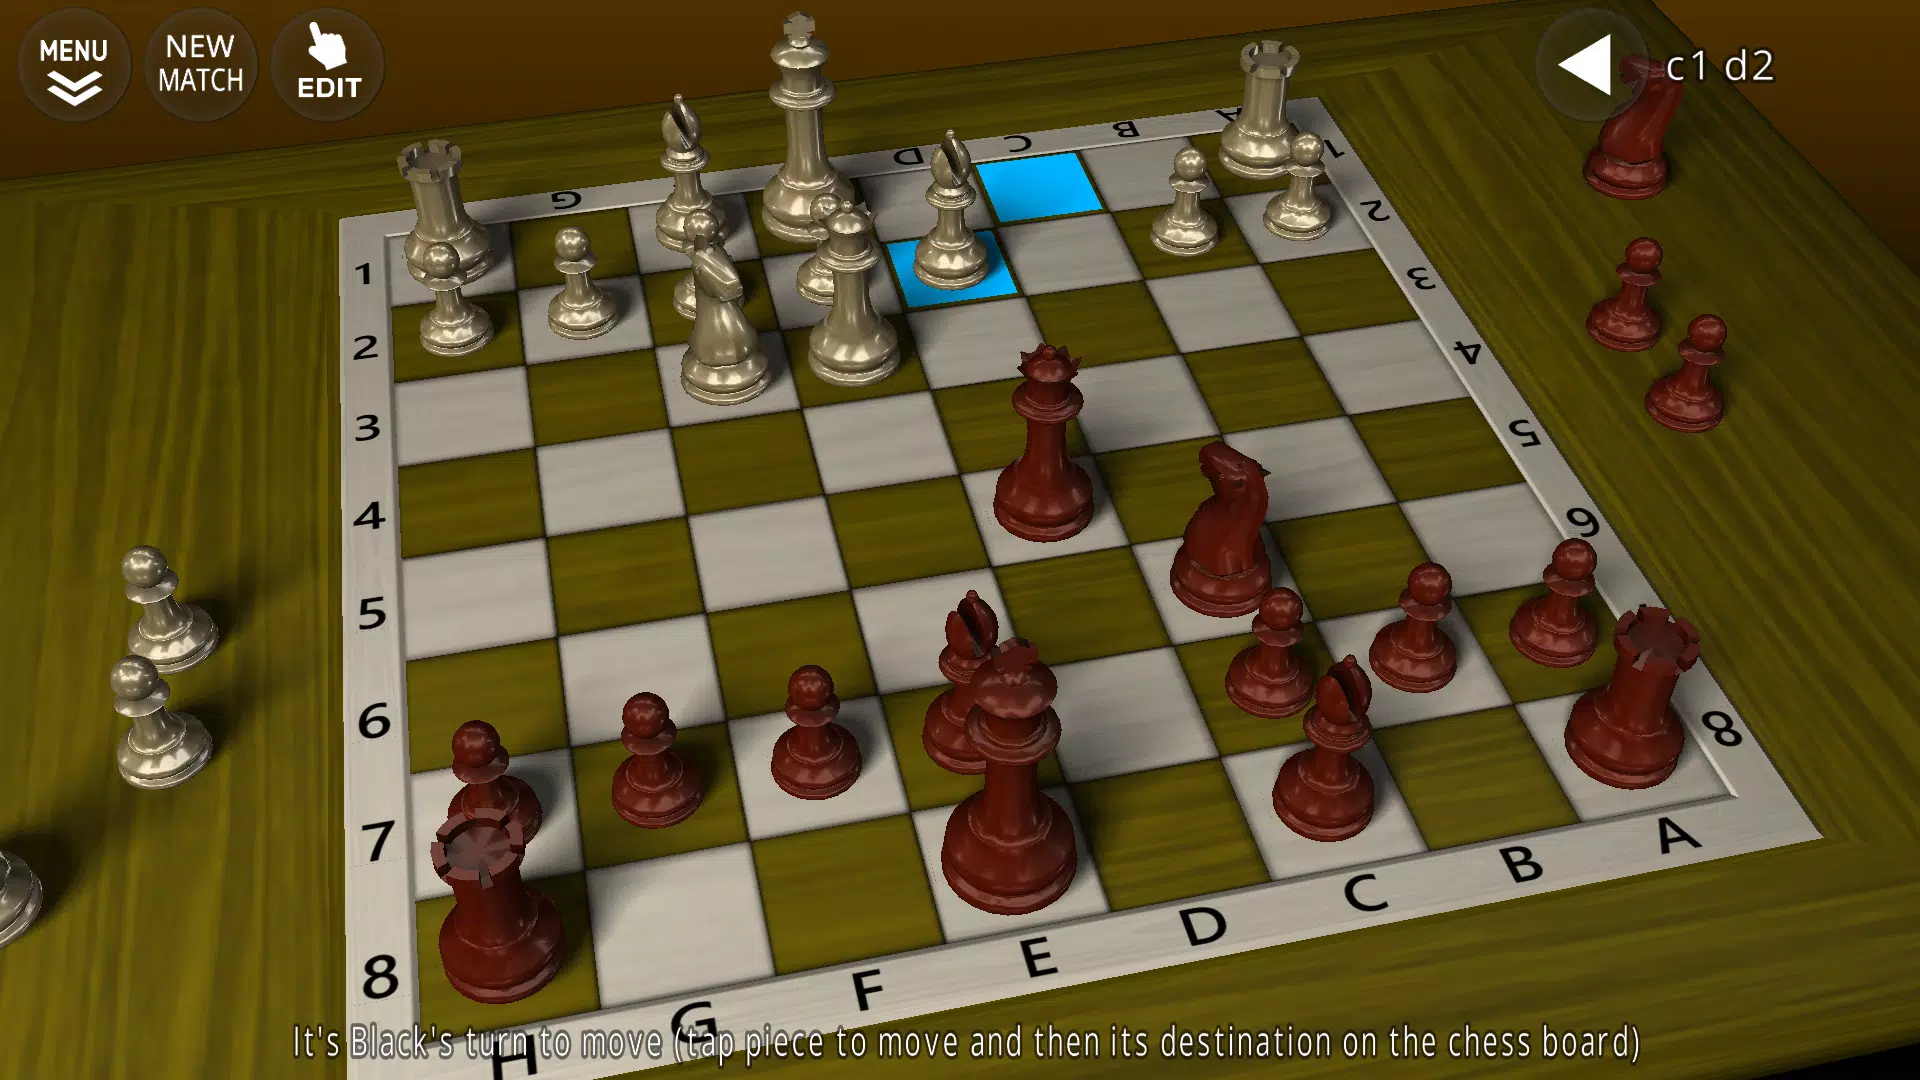 3D Chess Wallpaper 01  Chess, Chess game, 3d chess